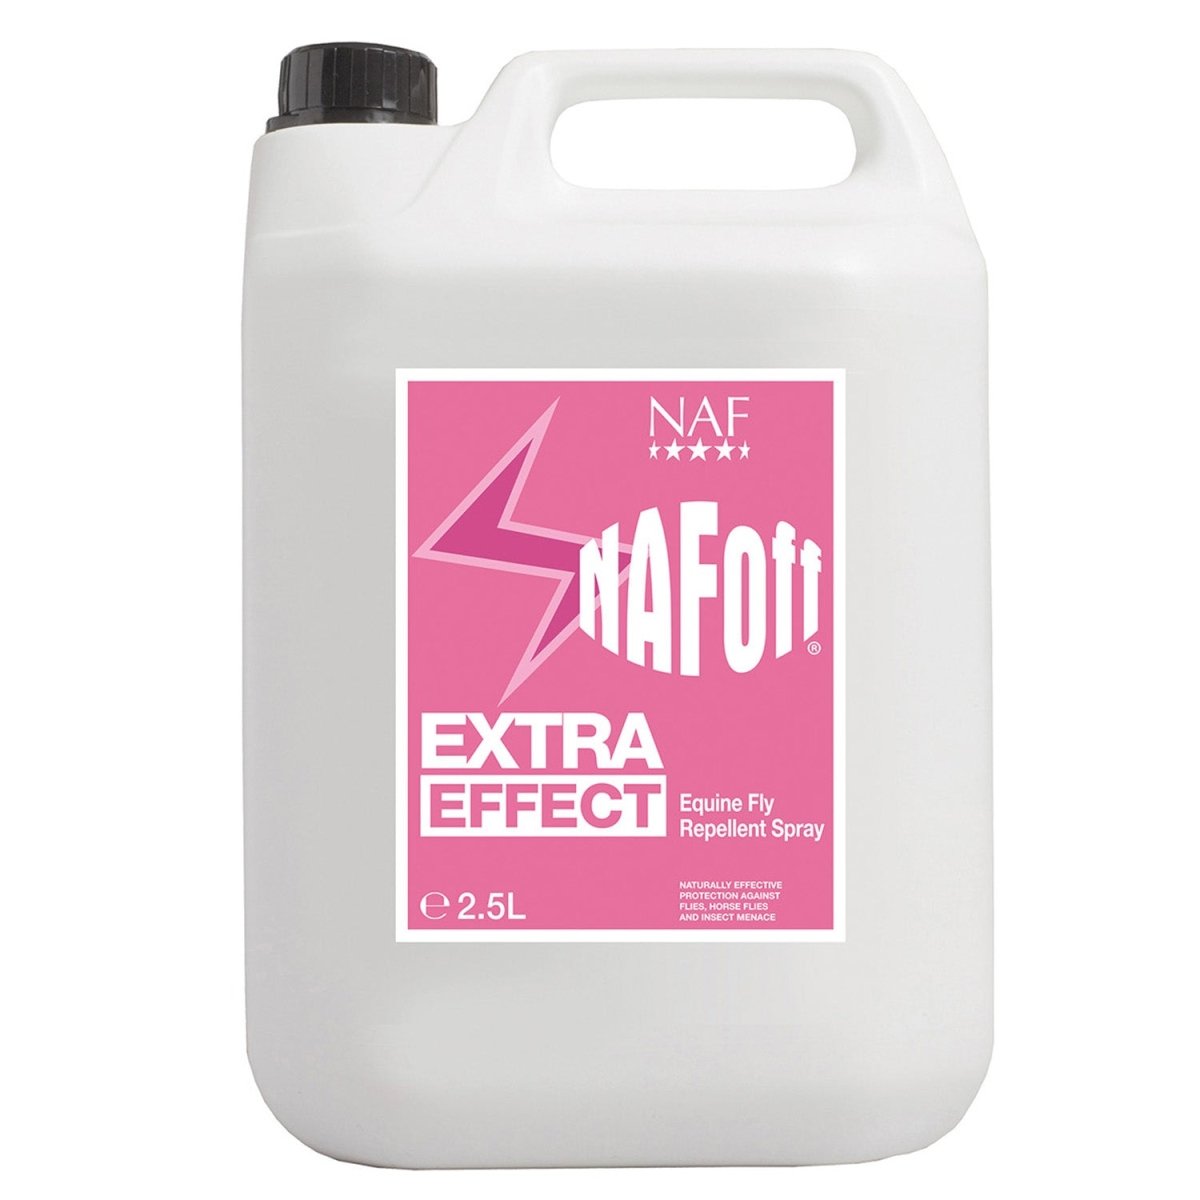 Naf Off Extra Effect - 2.5Lt -